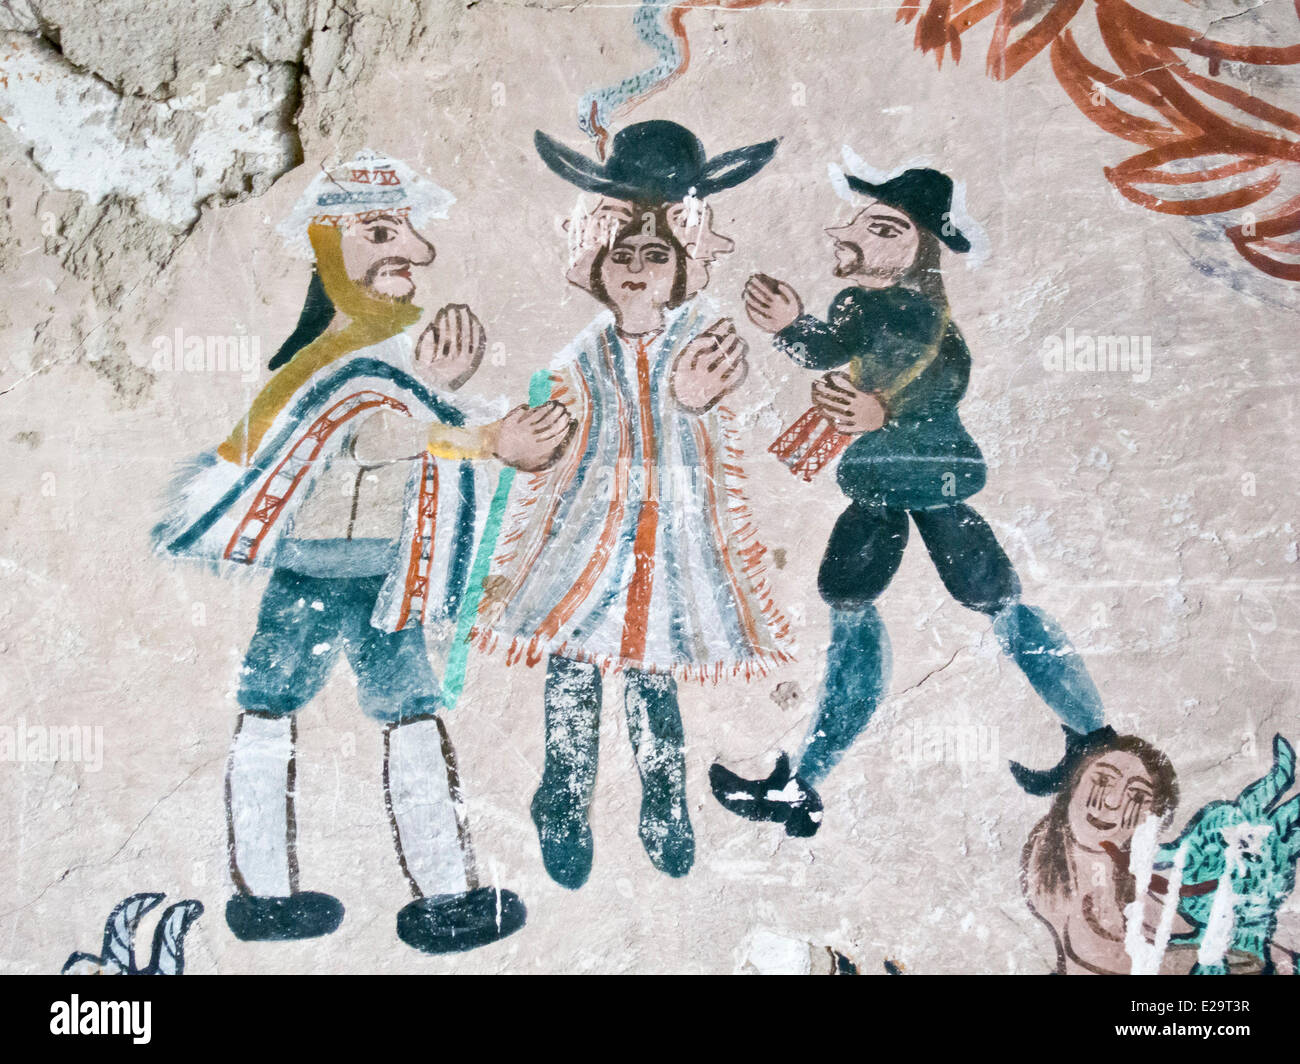 Le Chili, Arica et Parinacota, région du parc national de Lauca, fresques dans l'église de Parinacota, 17e siècle Banque D'Images